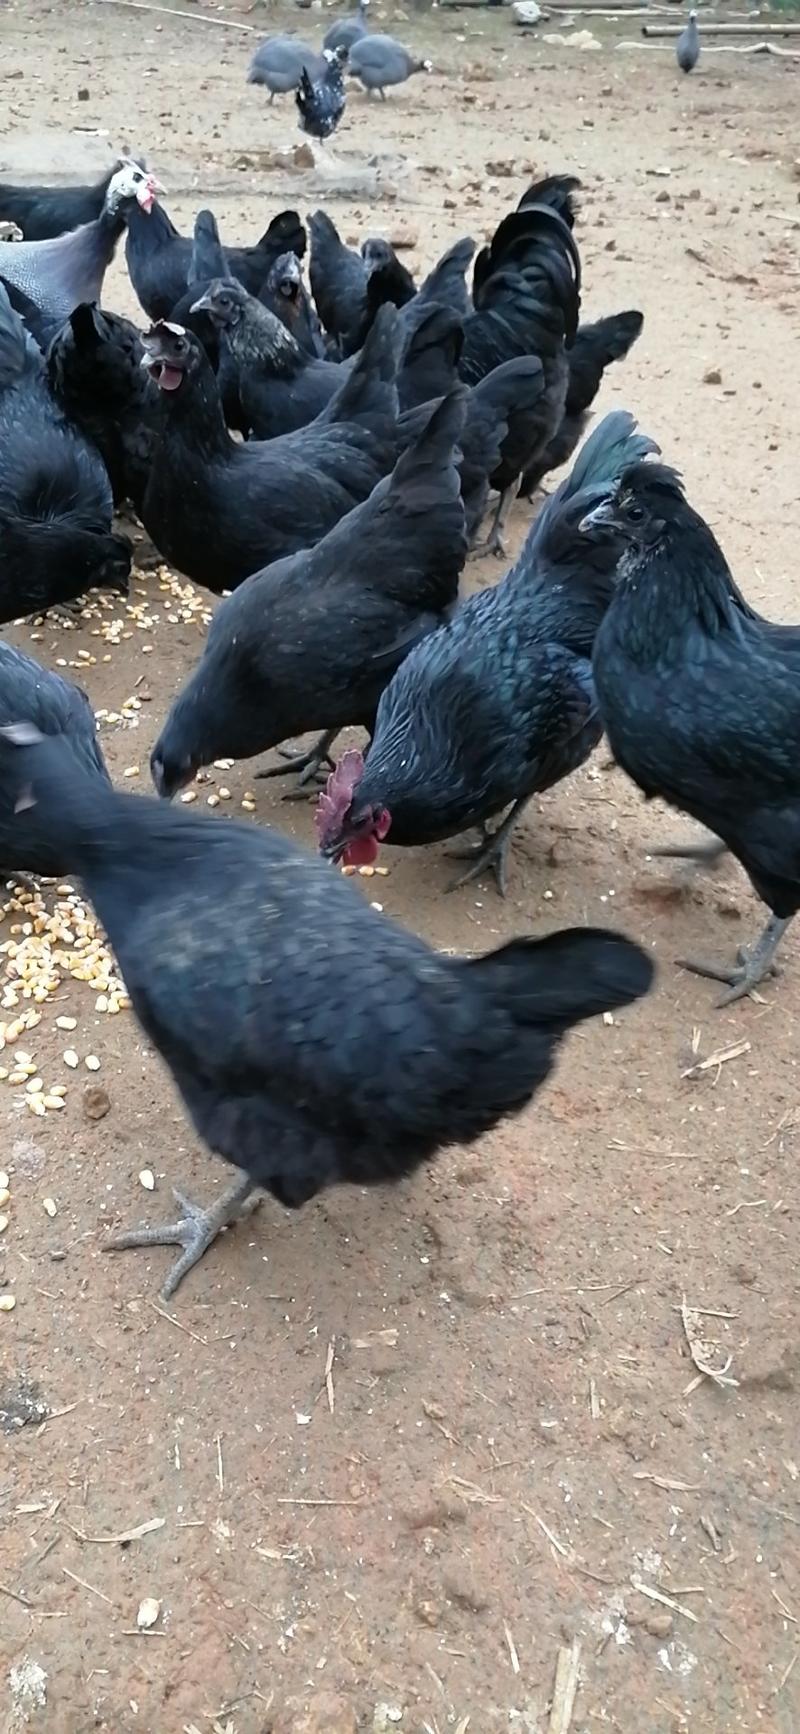 五黑鸡，土鸡种蛋可孵化种蛋出壳达90%